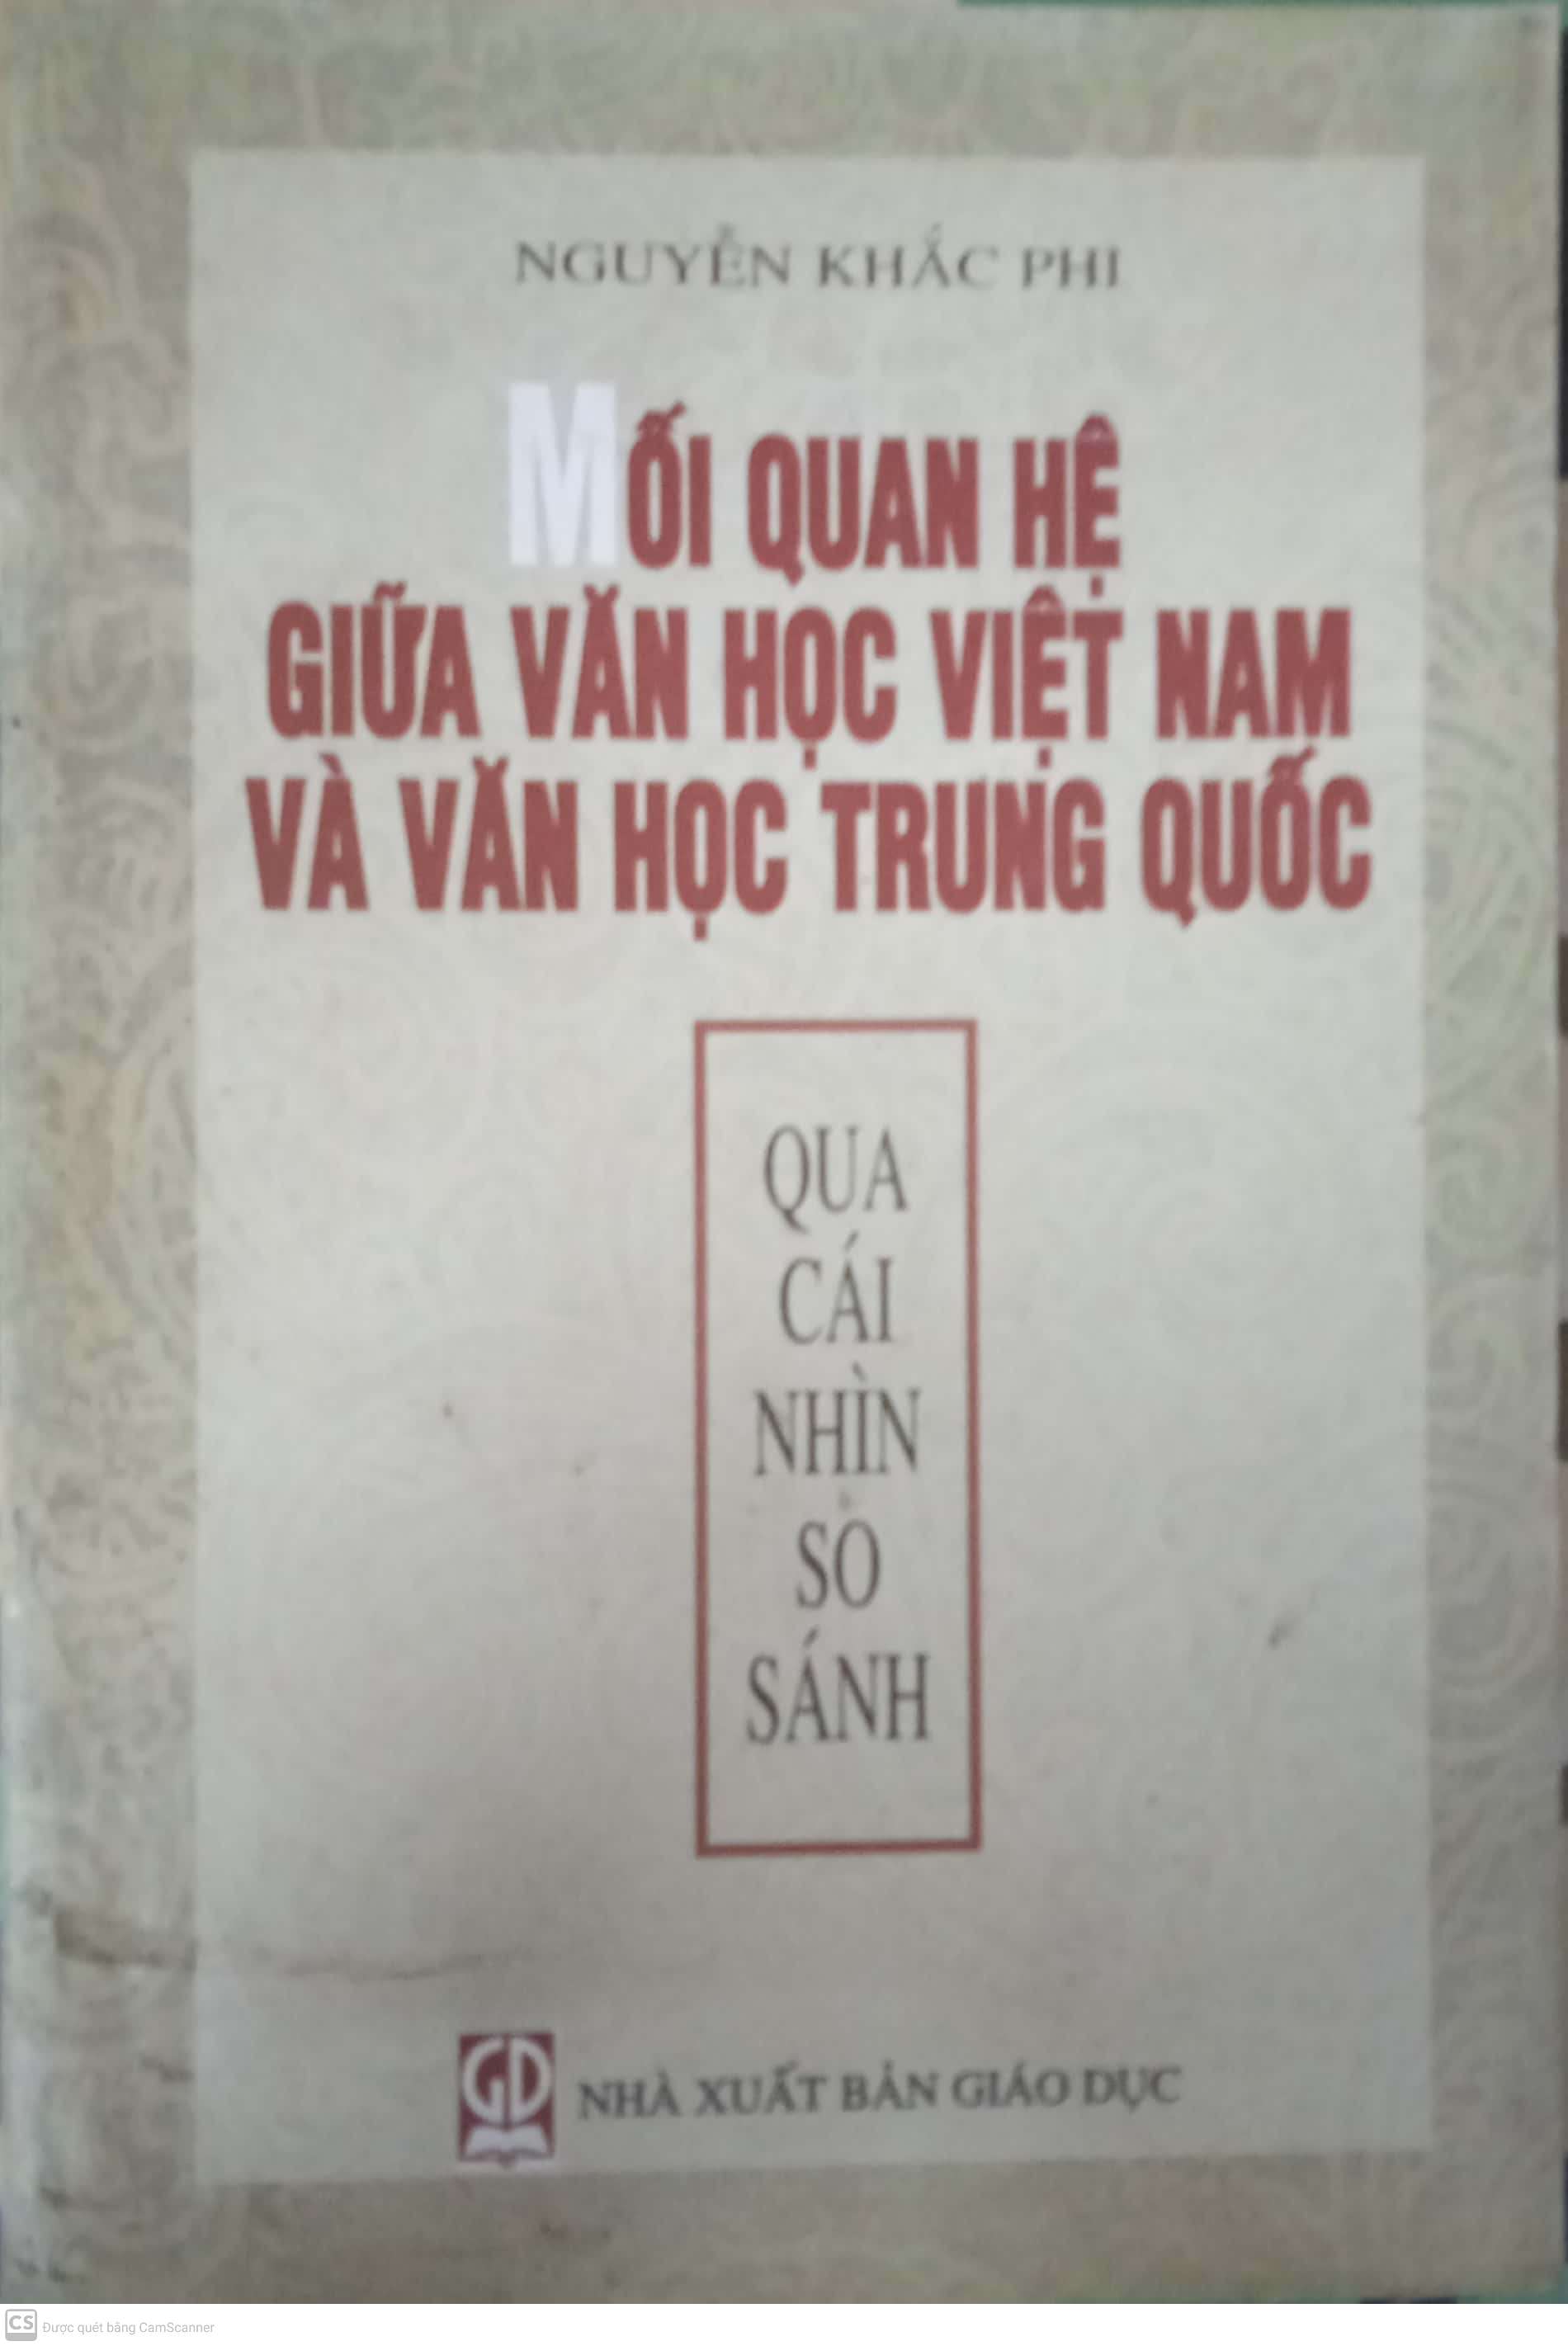 Mối Quan Hệ Của Văn Học Việt Nam Và Văn Học Trung Quốc Qua Cái Nhìn So Sánh